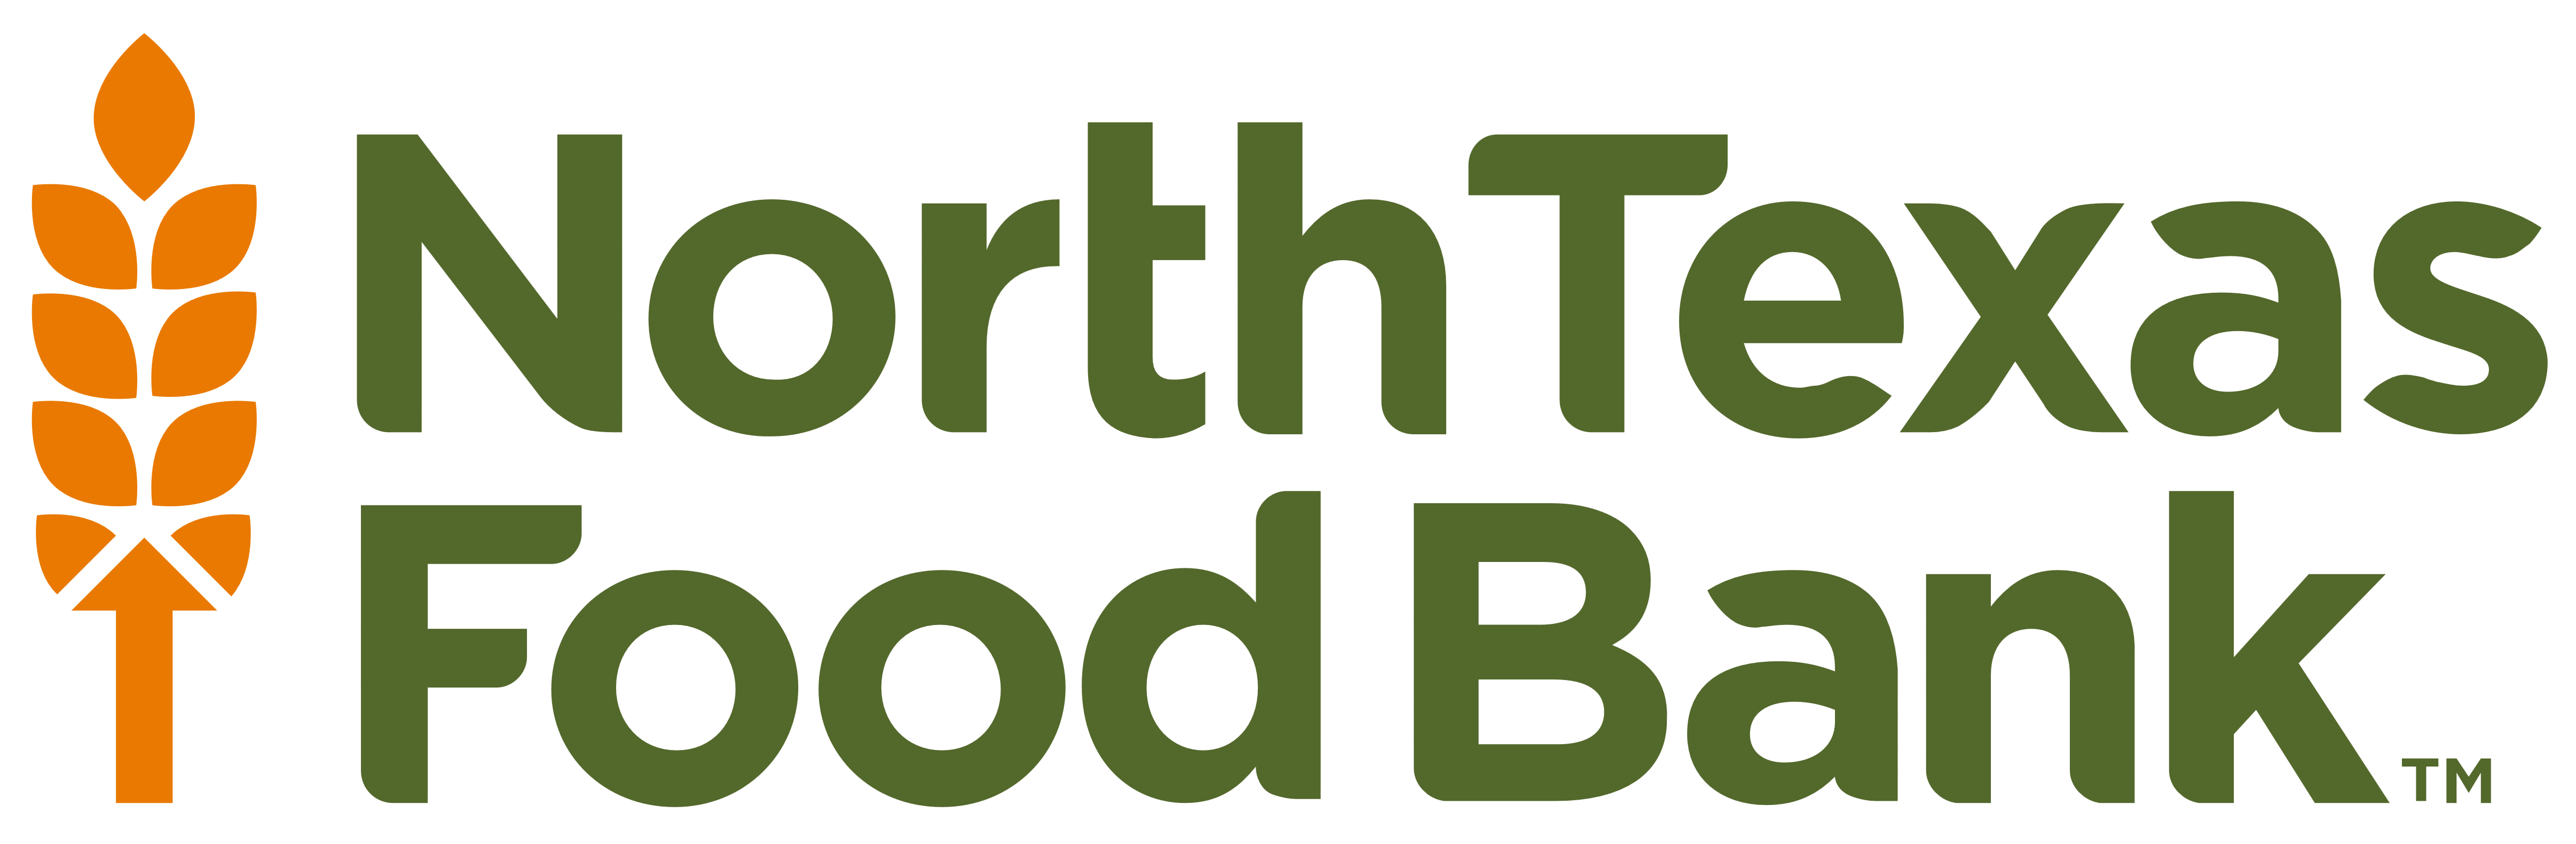 North Texas Food Bank – Logos Download